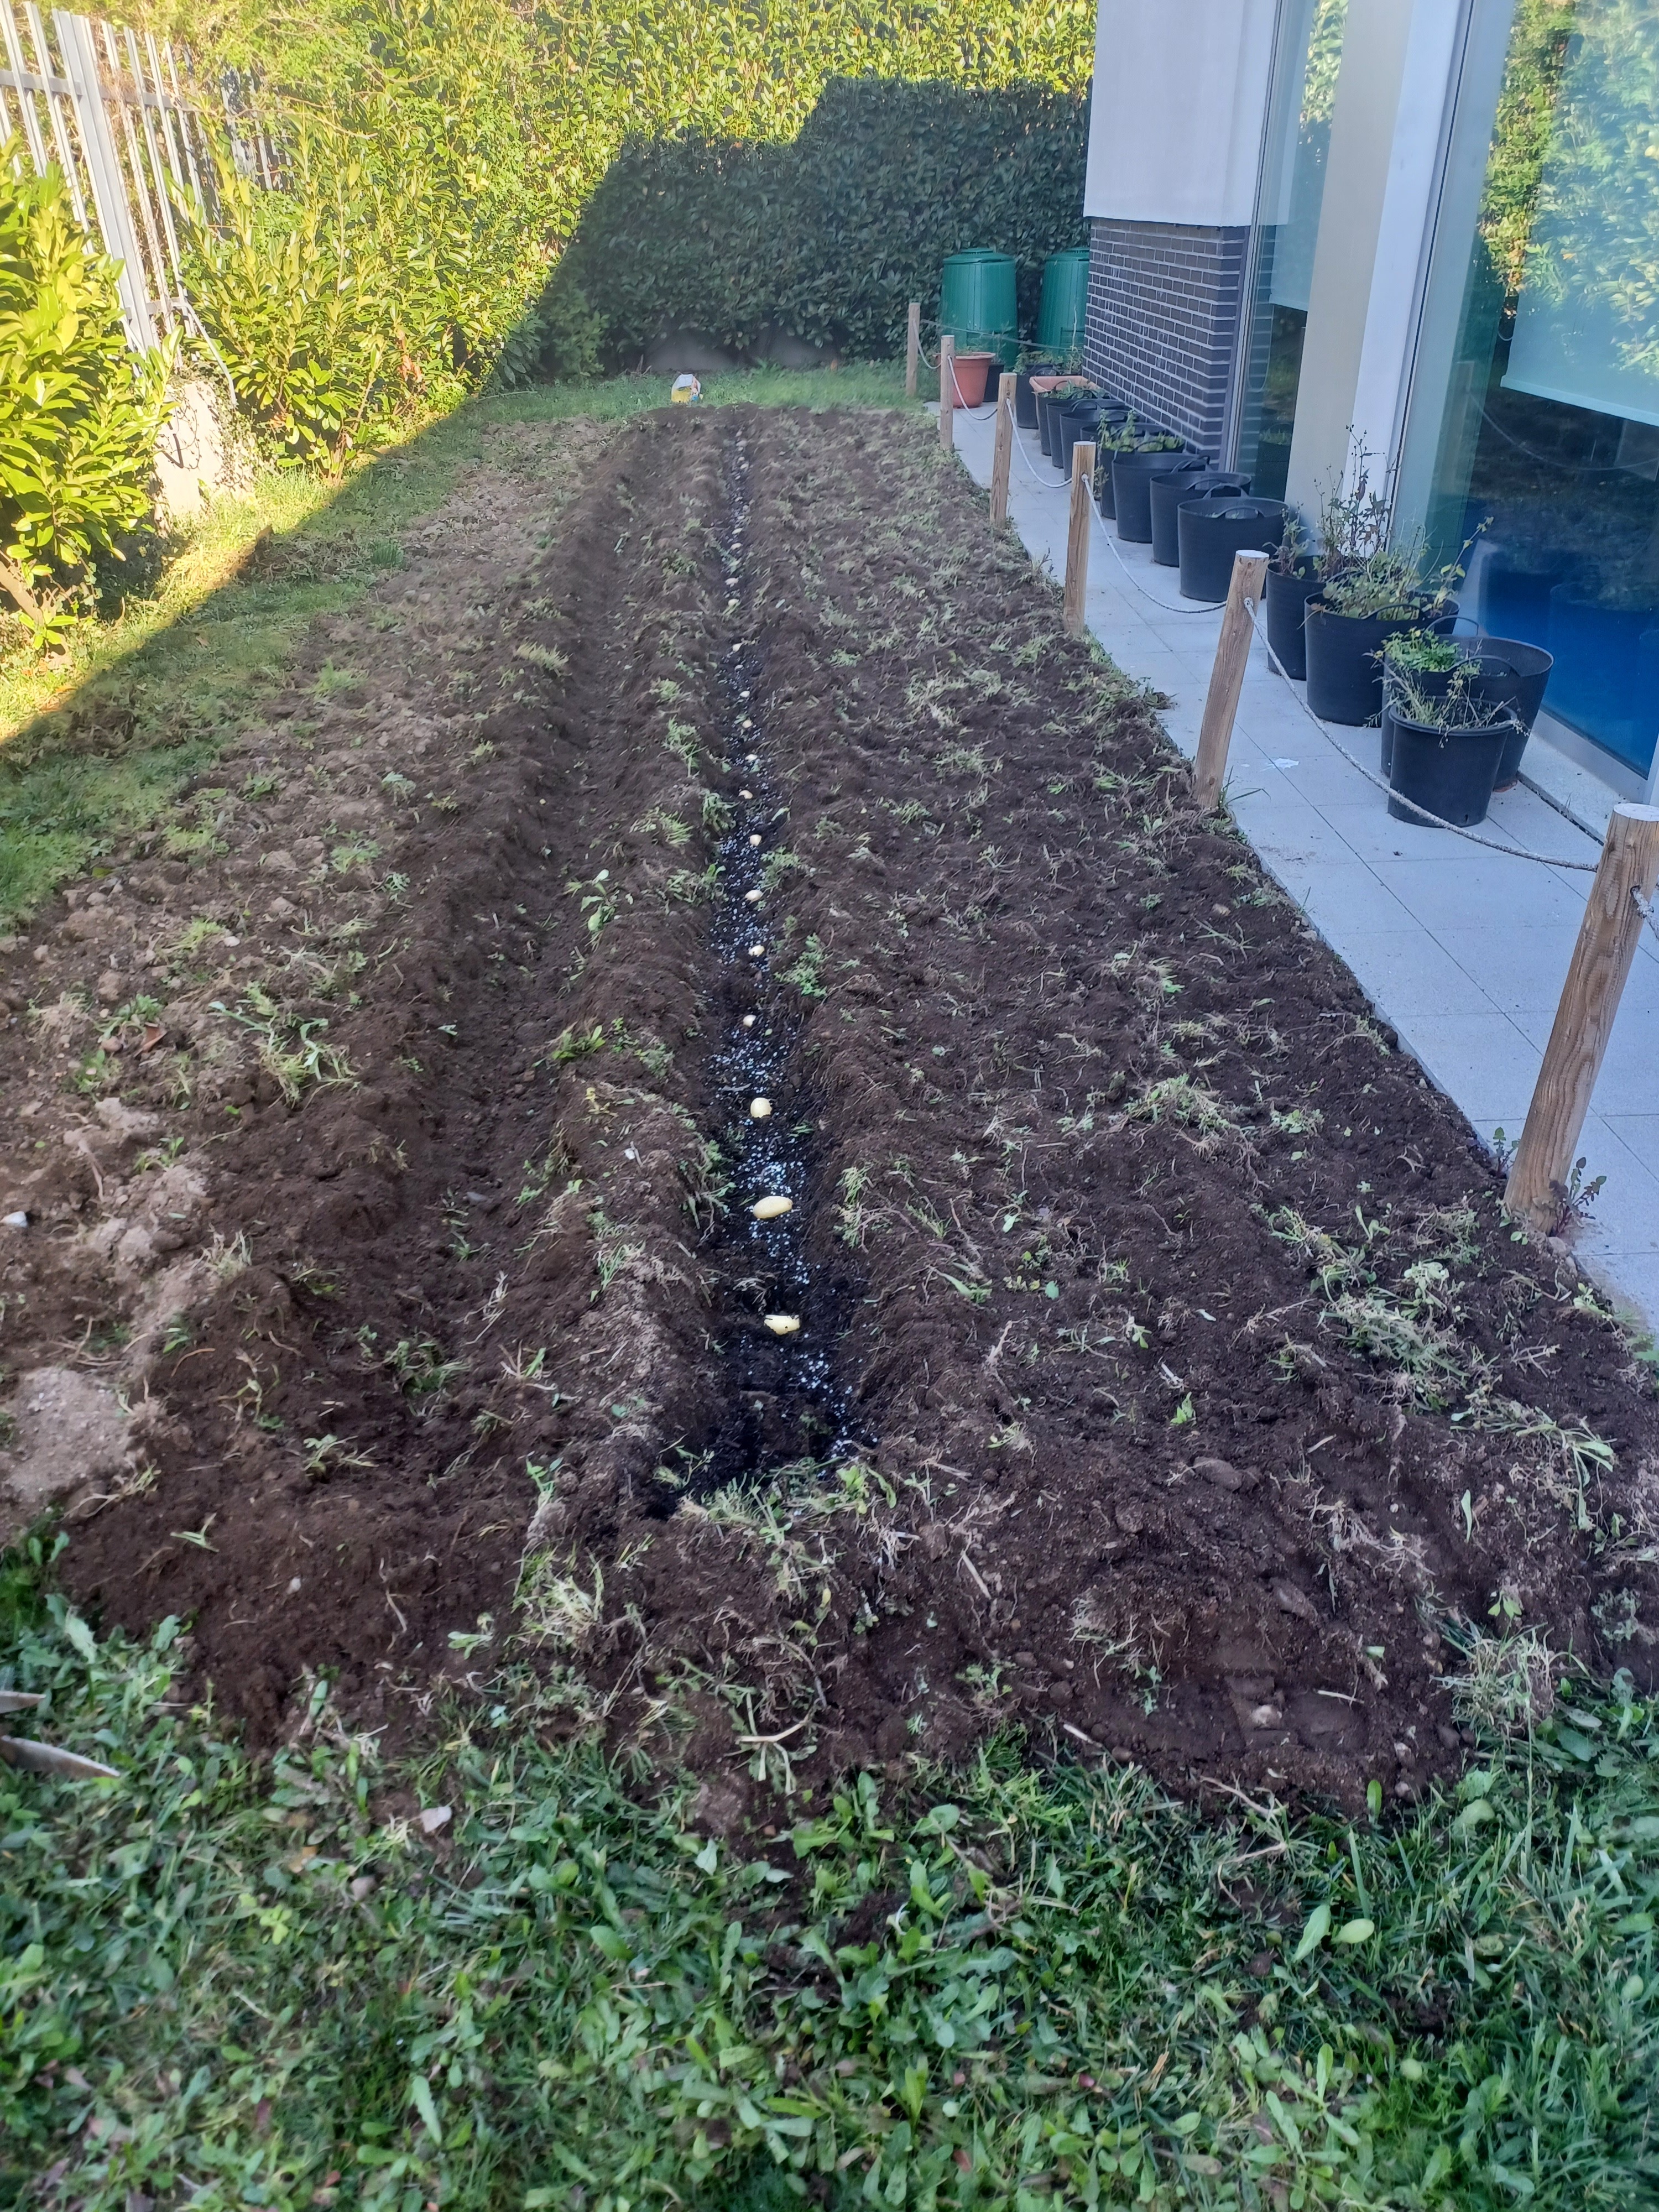 Sementeira de batatas
No final do mês de fevereiro, os alunos do 2.º ano da EB1/JI do Século procederam à sementeira de batatas no espaço da Horta Biológica. Para isso, sacharam a terra, retiraram as ervas daninhas, abriram os regos, adubaram com compost